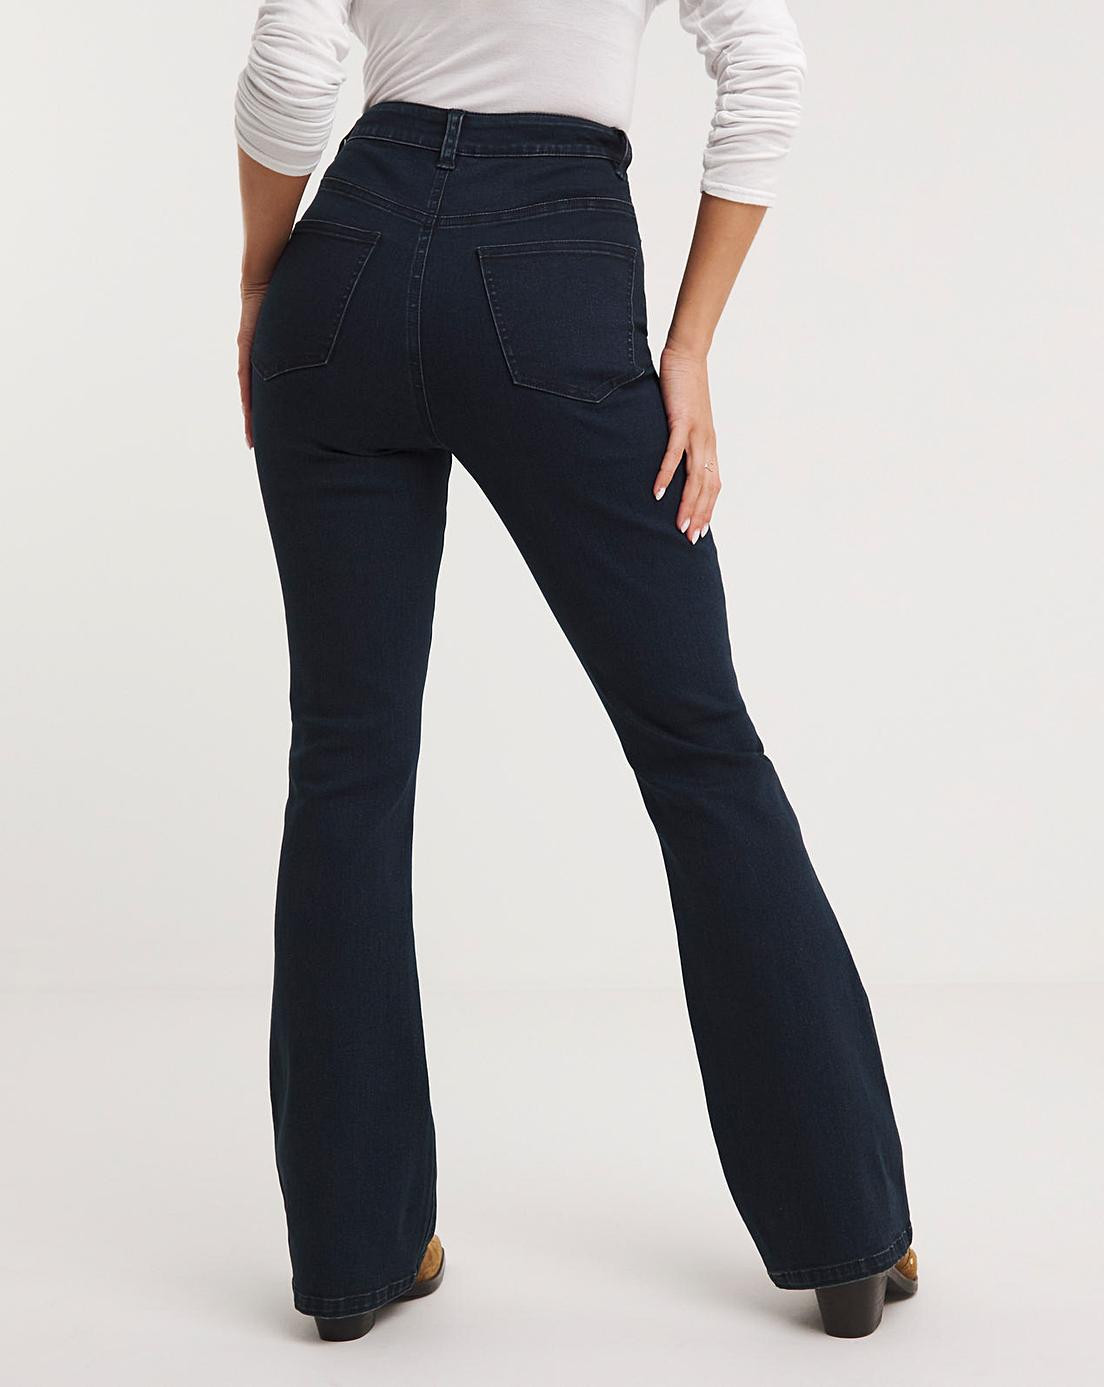 spodnie bootcut jeans wysoki stan